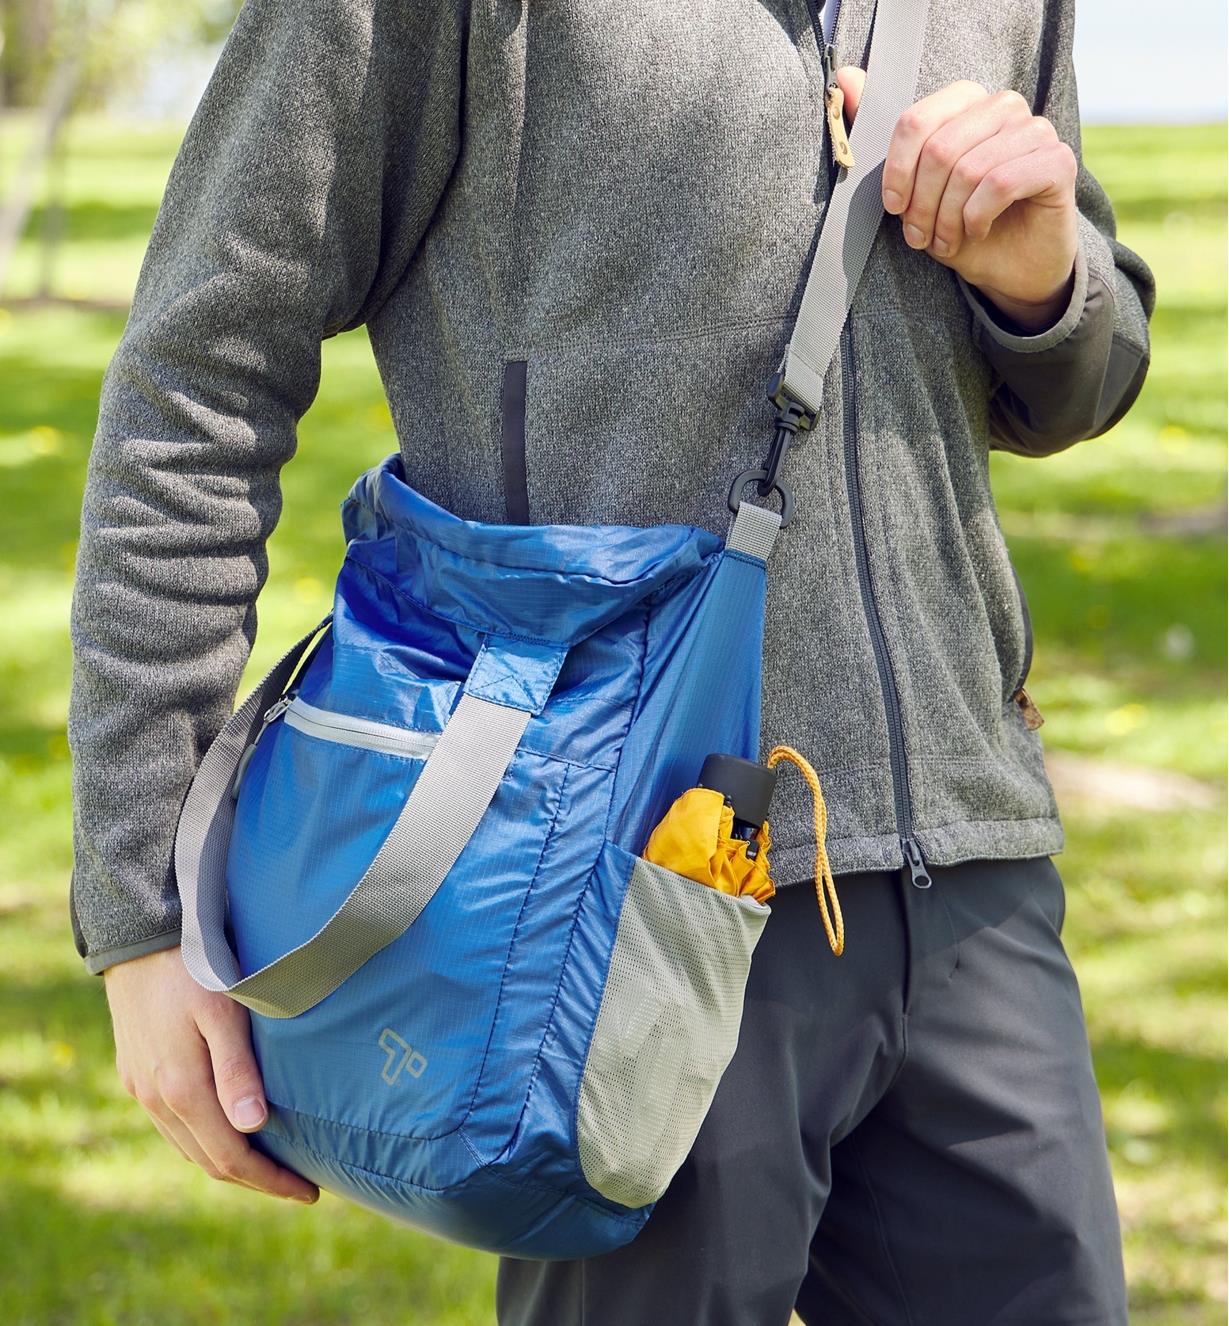 A packable shoulder bag being worn over someone’s shoulder